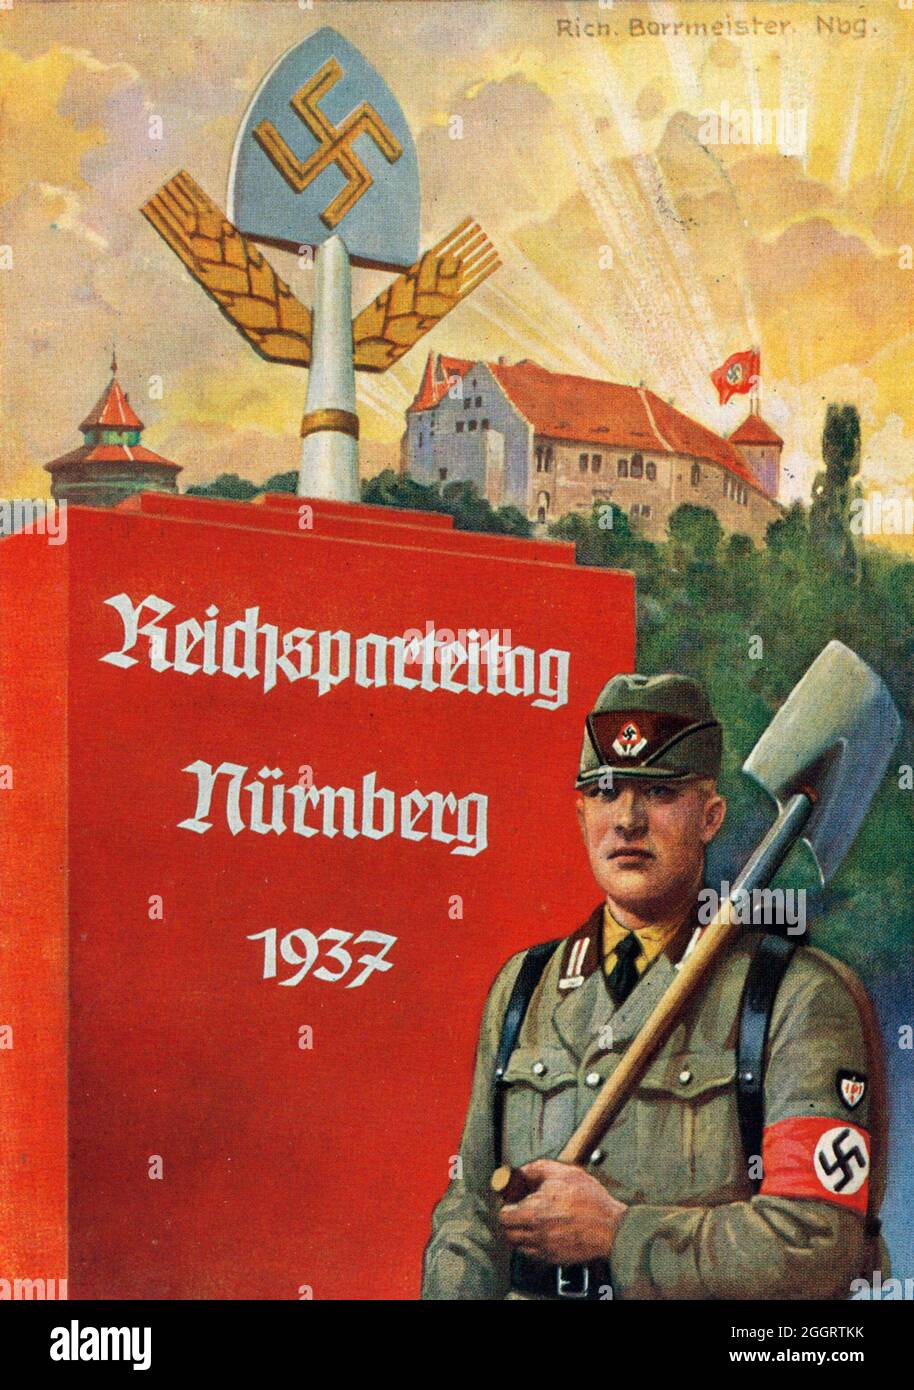 Ein Vintage-Plakat für die jährliche Reichsparteitagsversammlung der Nazis in Nürnberg mit einem uniformierten Mitglied des Reichsarbeitsdienstes (Rad) Stockfoto